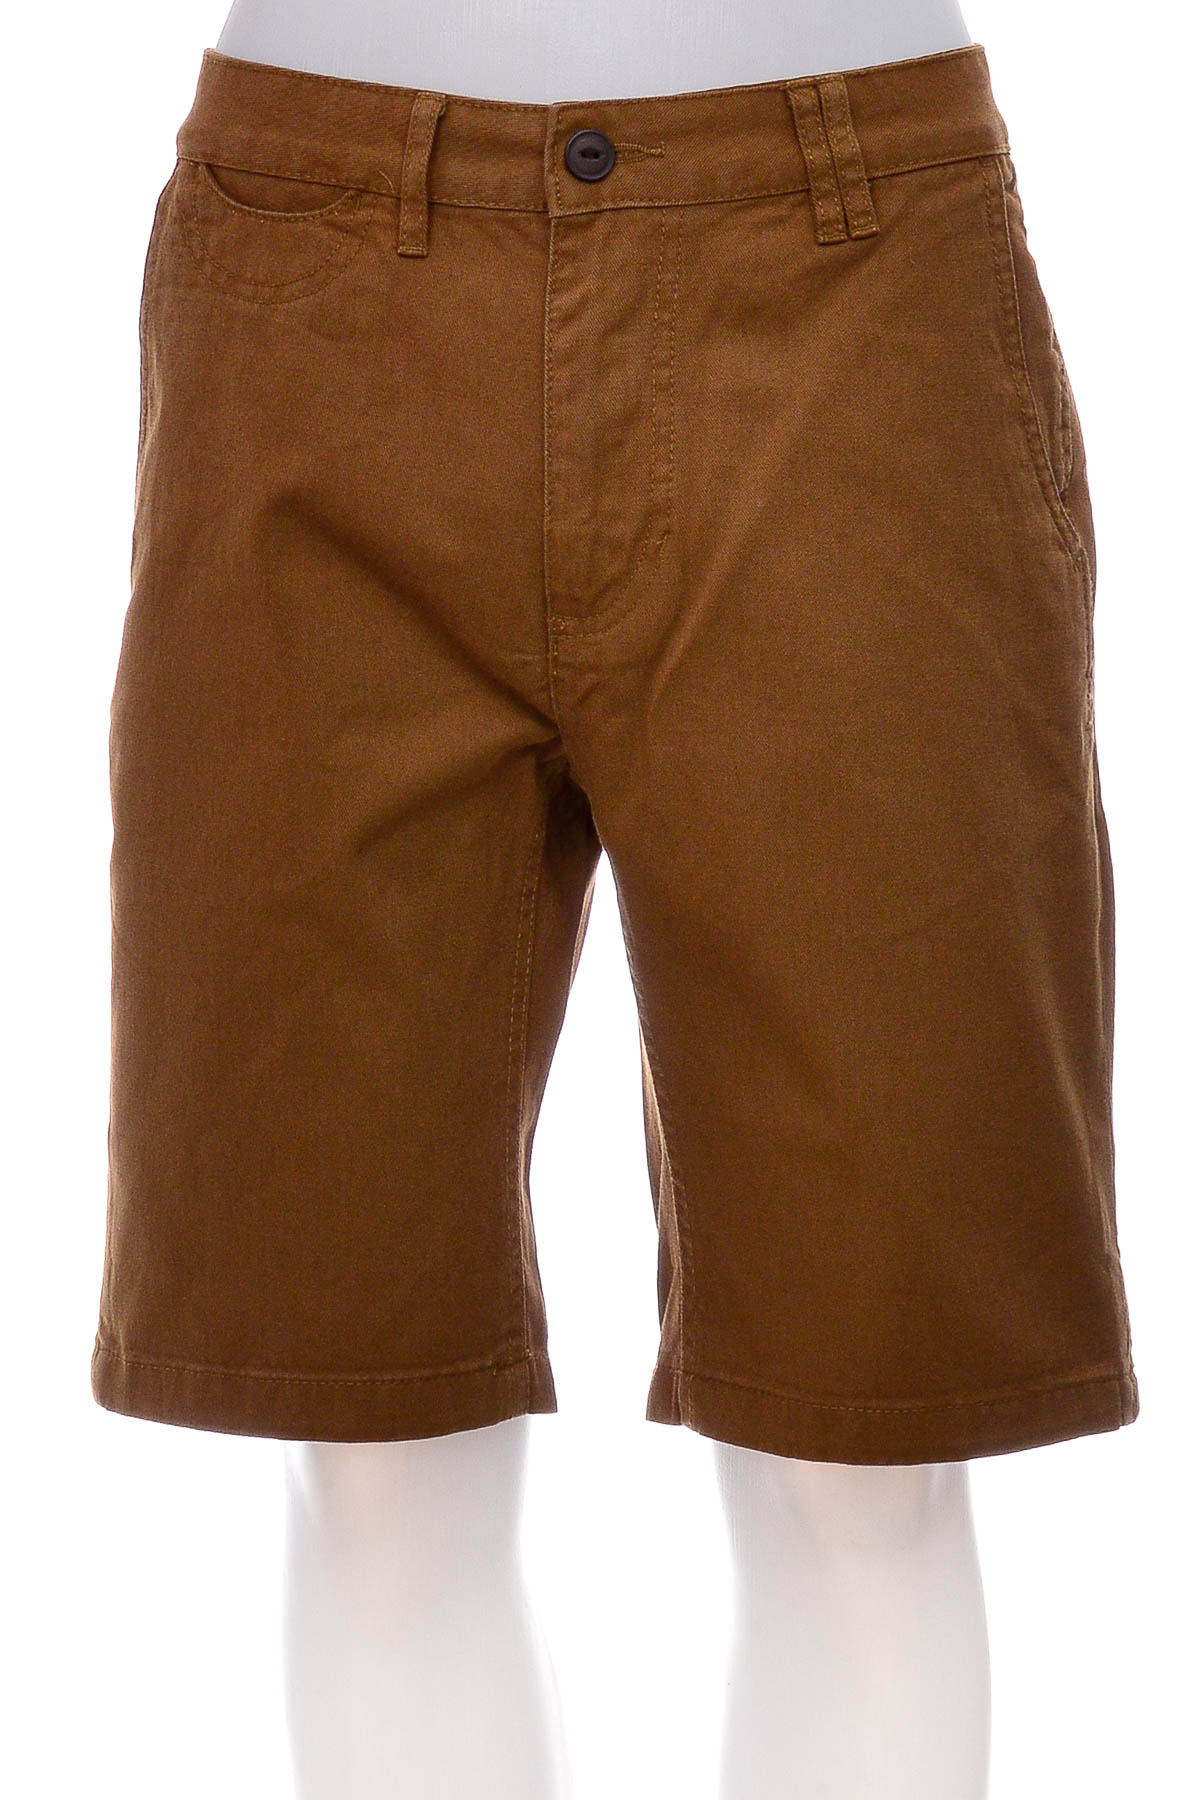 Men's shorts - Kiomi - 0